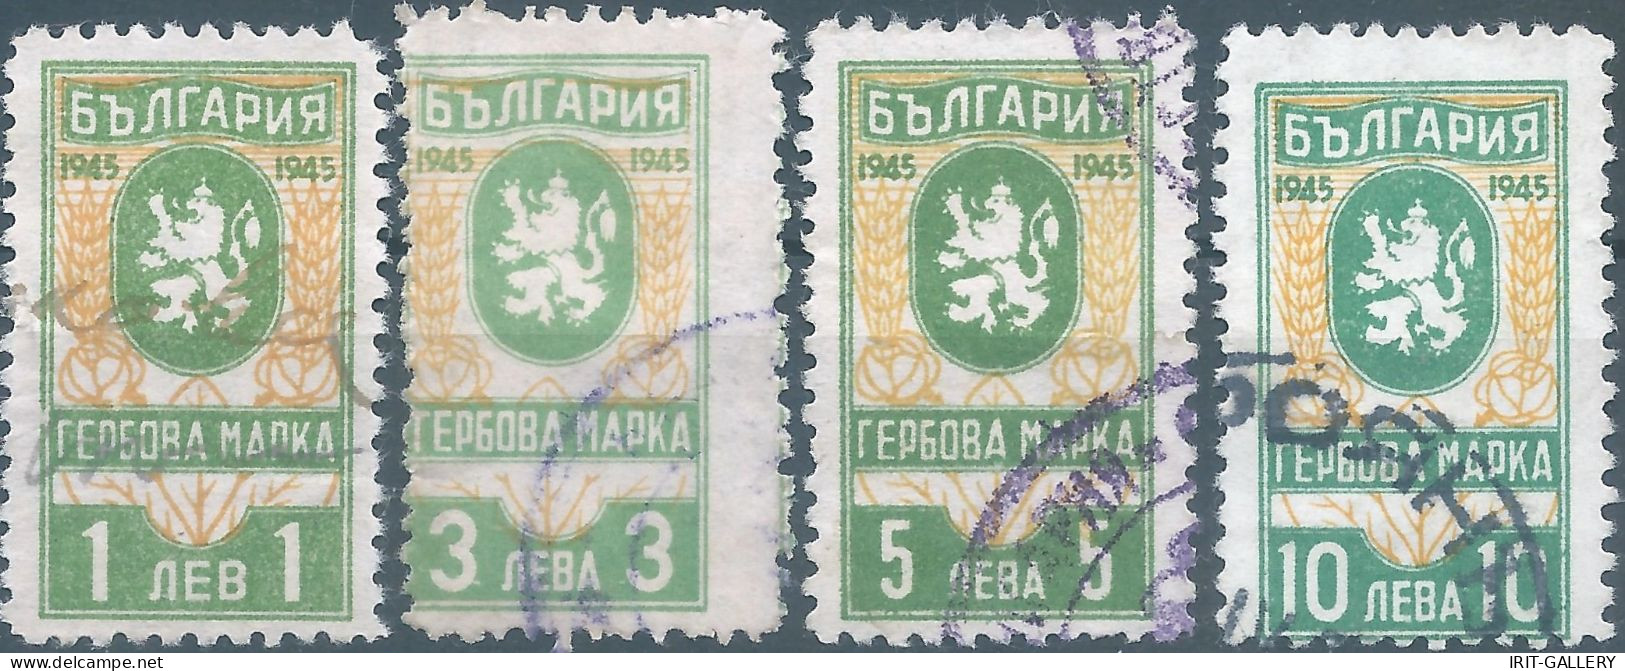 Bulgaria - Bulgarien - Bulgare,1945 Revenue Stamp Tax Fiscal,Used - Timbres De Service